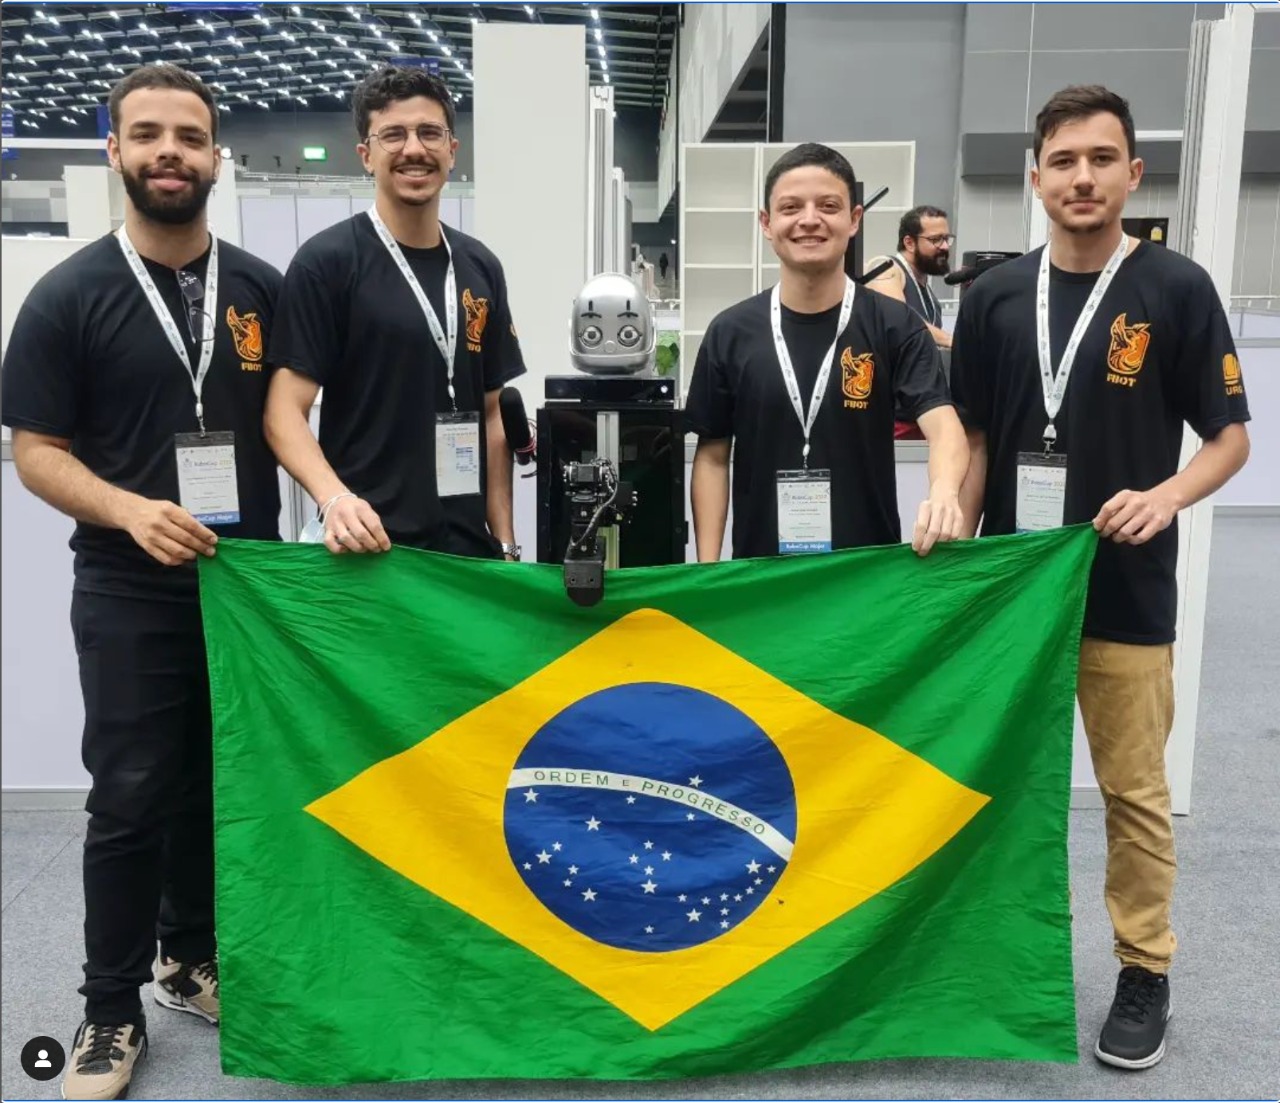 quatro alunos vestindo camiseta preta ao centro um robo. ambos seguram a bandeira do Brasil